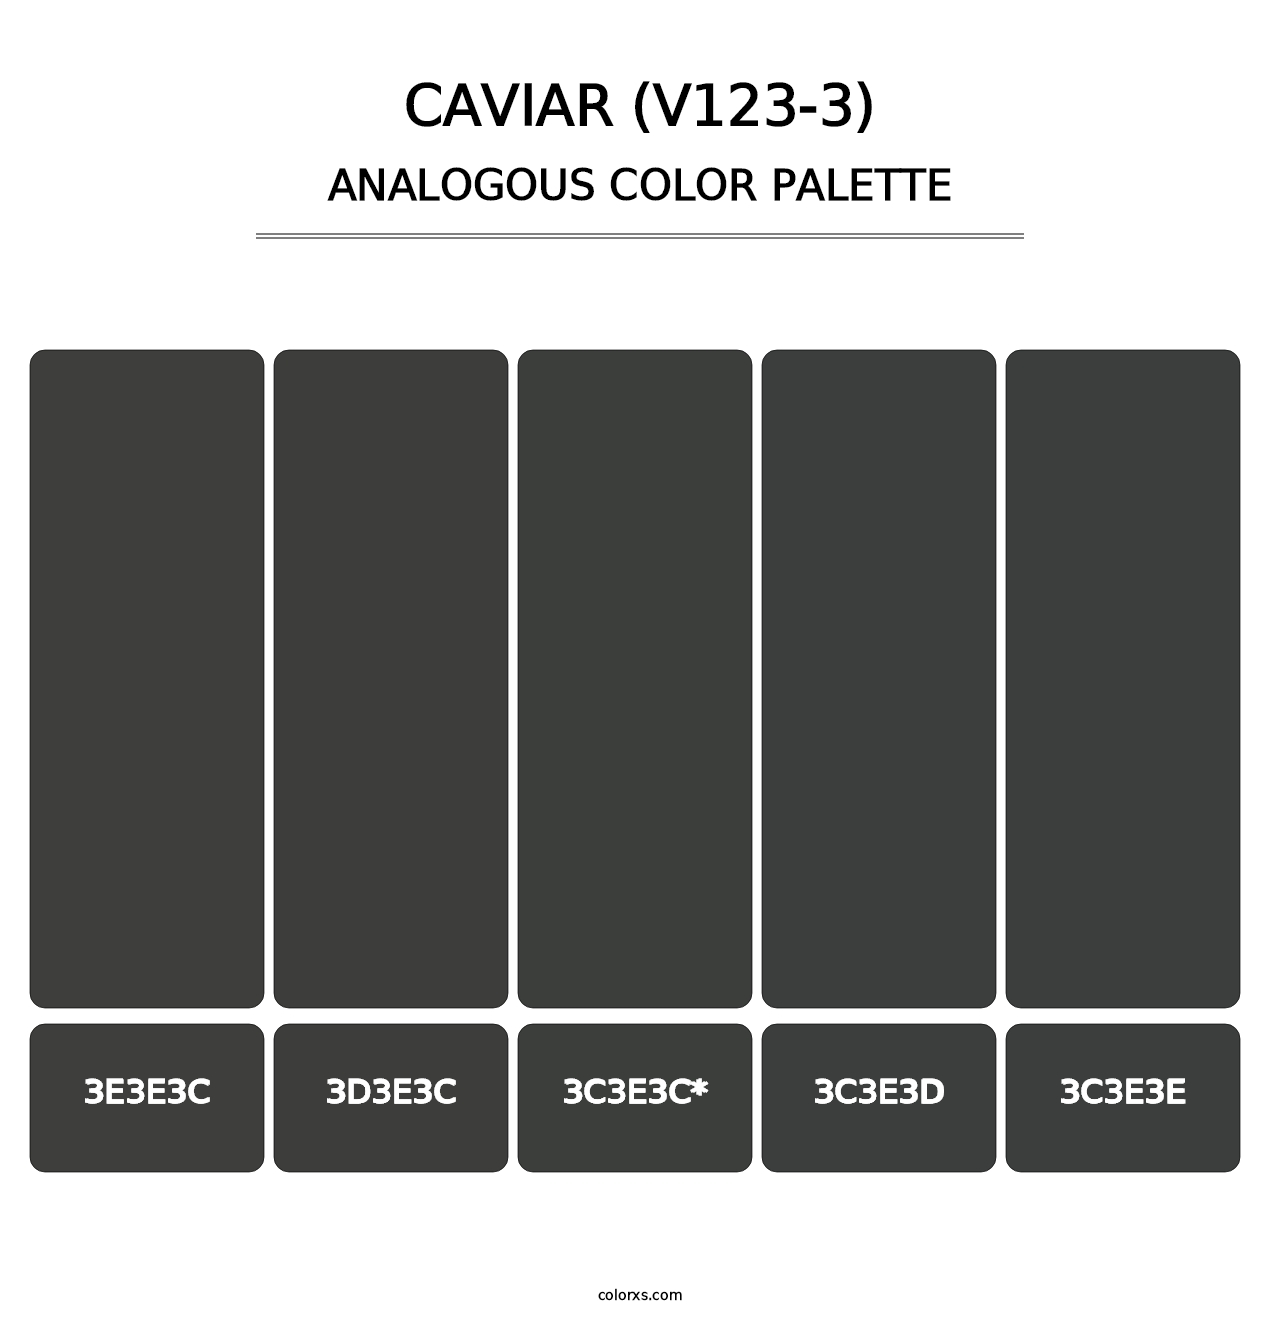 Caviar (V123-3) - Analogous Color Palette